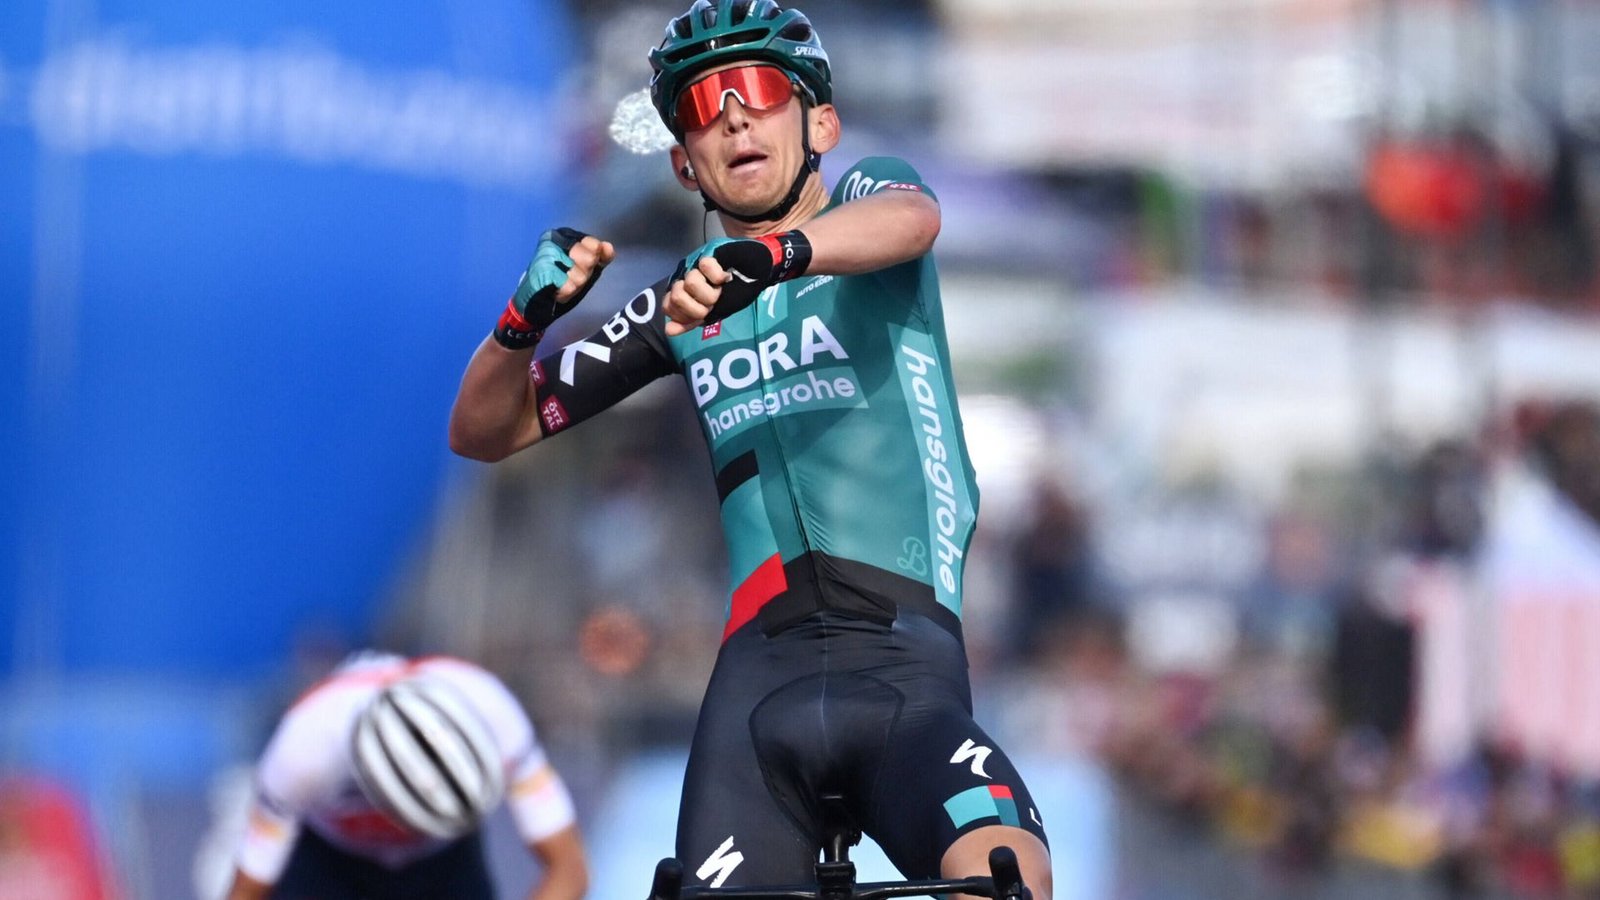 Im Mai gewann Lennard Kämna eine Etappe beim Giro d’Italia – gelingt dem Bora-Profi bei der Tour de France ein ähnlicher Coup? Alle neun deutschen Starter bei der Frankreich-Rundfahrt finden Sie in unserer Bildergalerie.Foto: Imago//Massimo Paolone